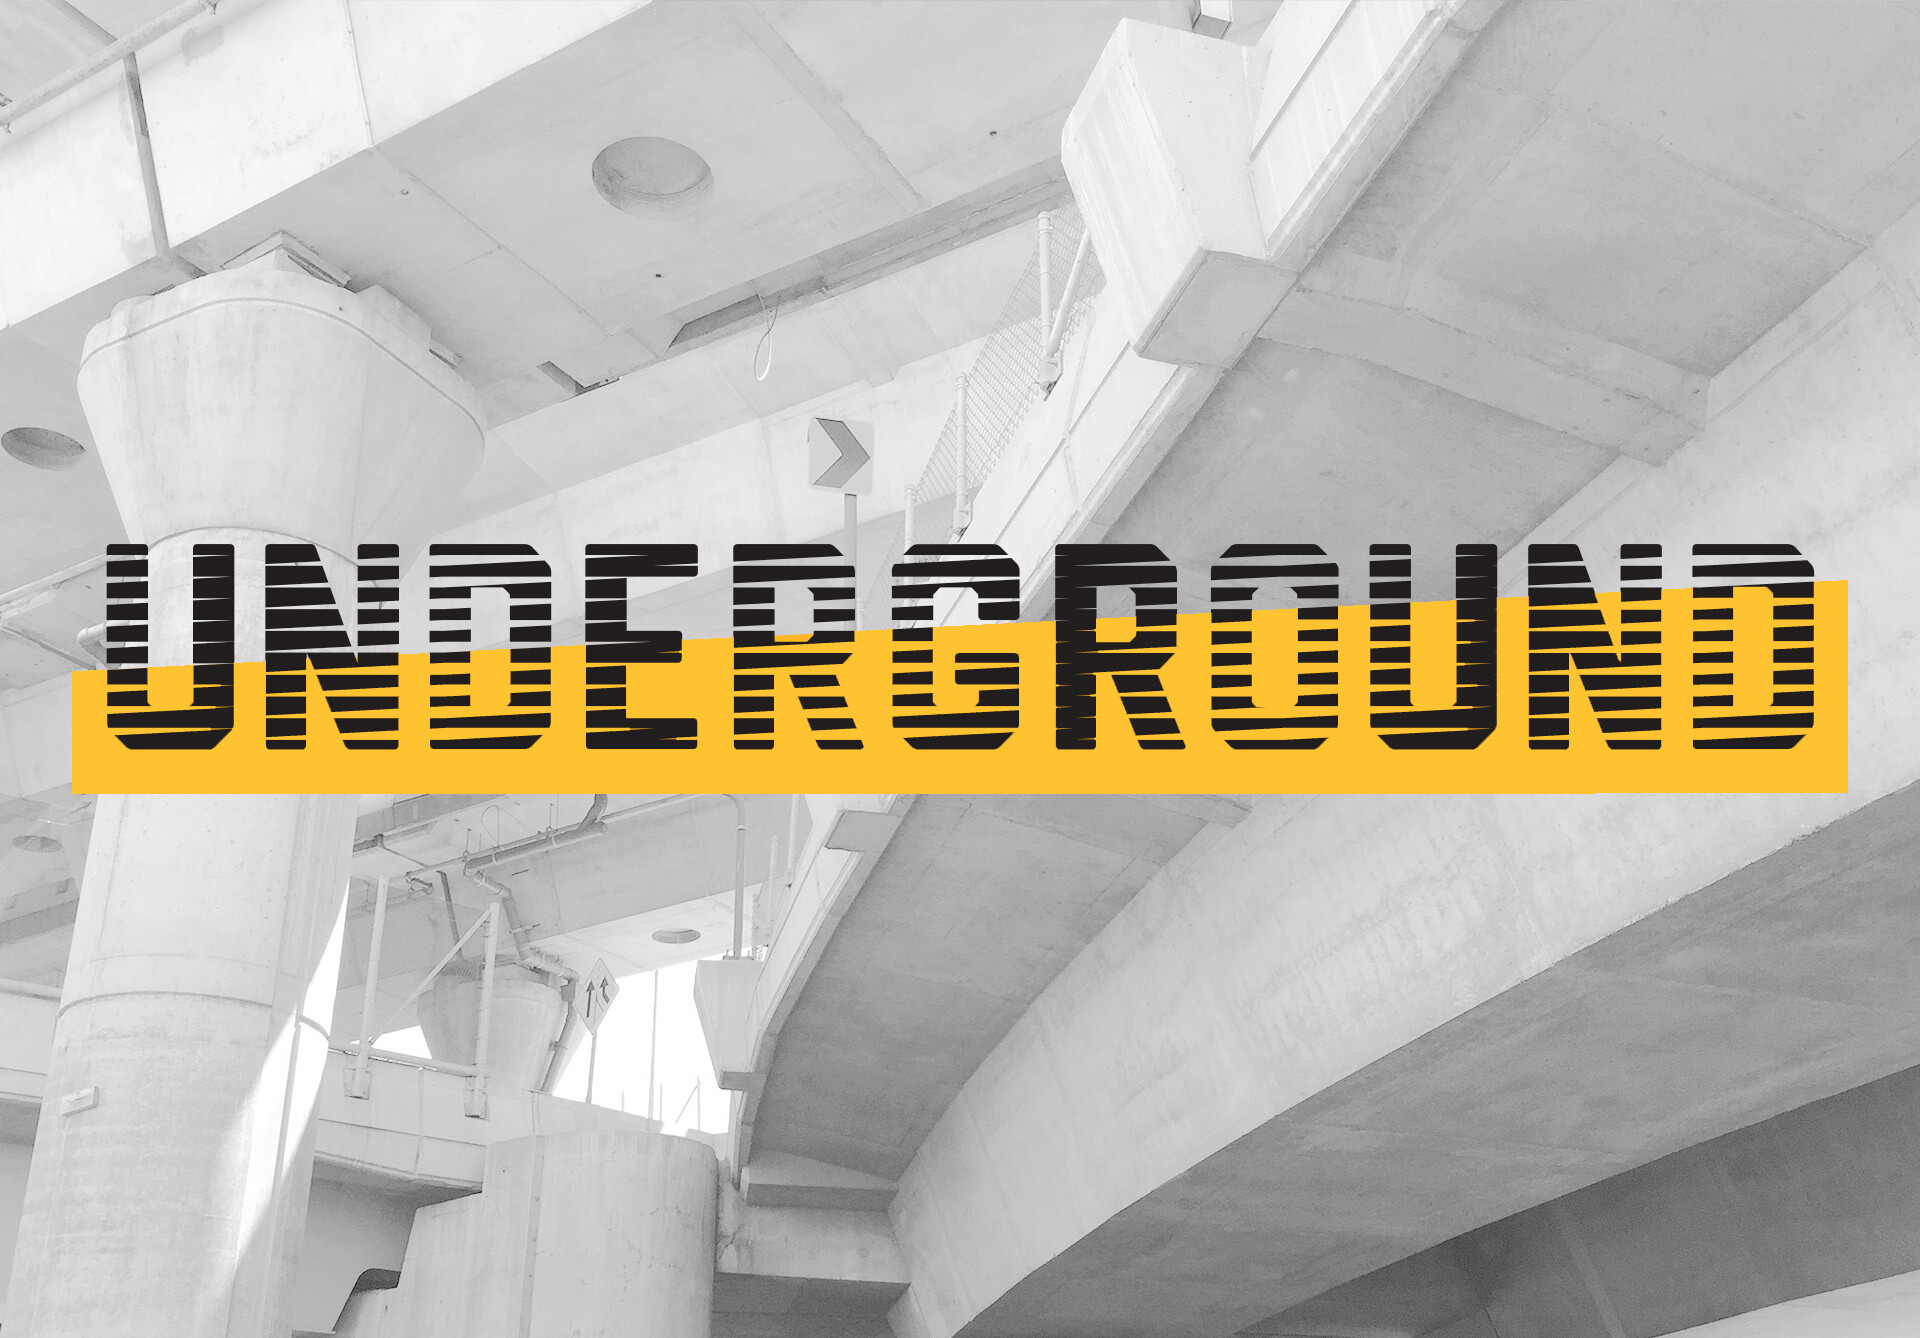 Underground logo over expressway image